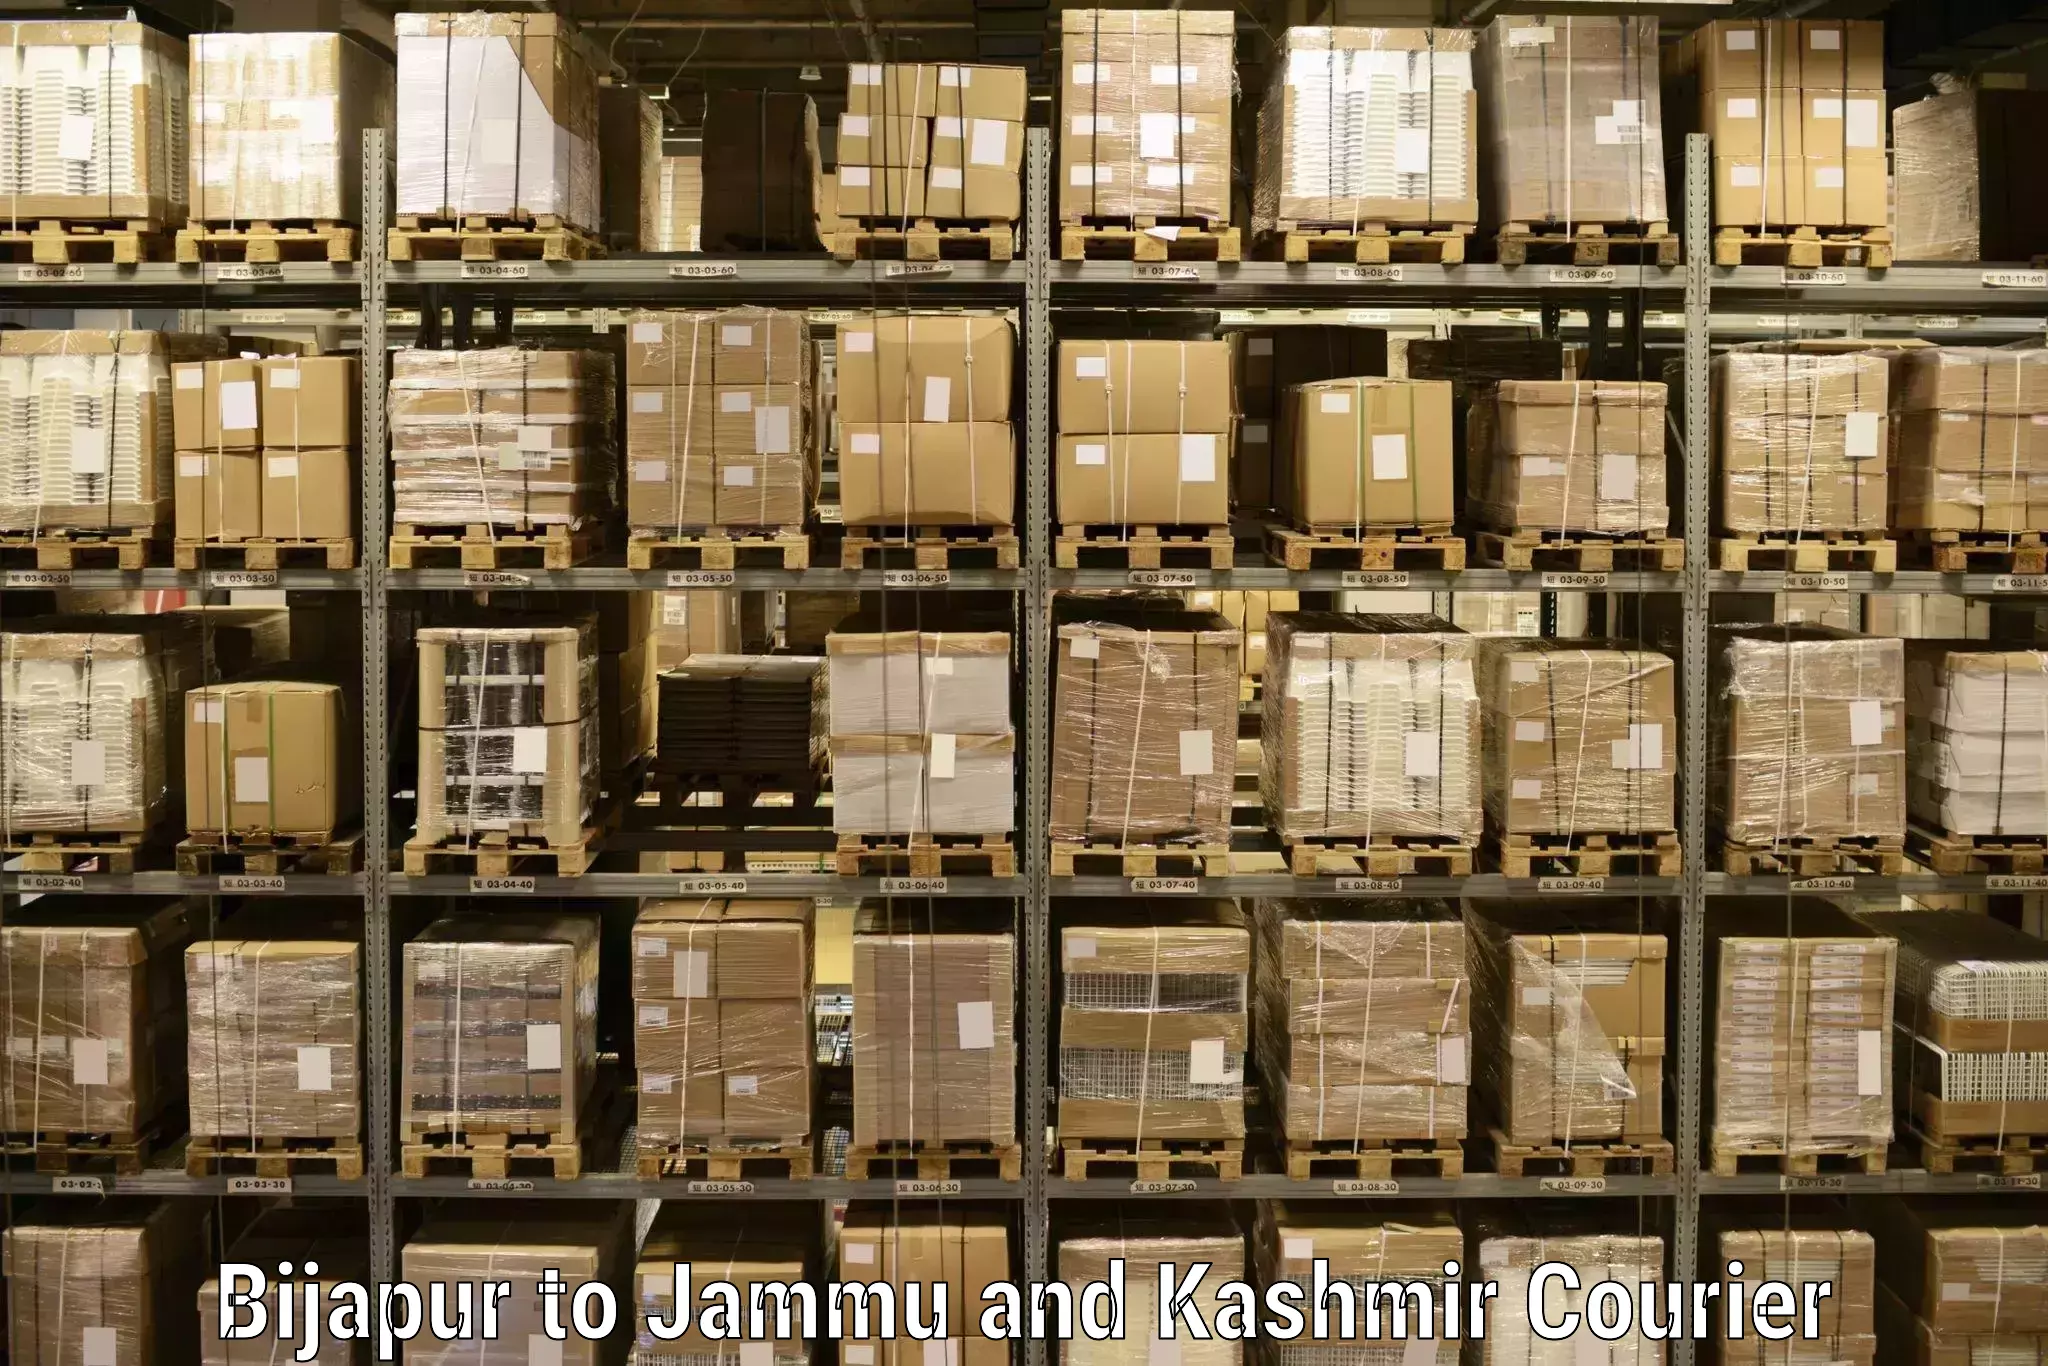 Cost-effective courier options Bijapur to IIT Jammu